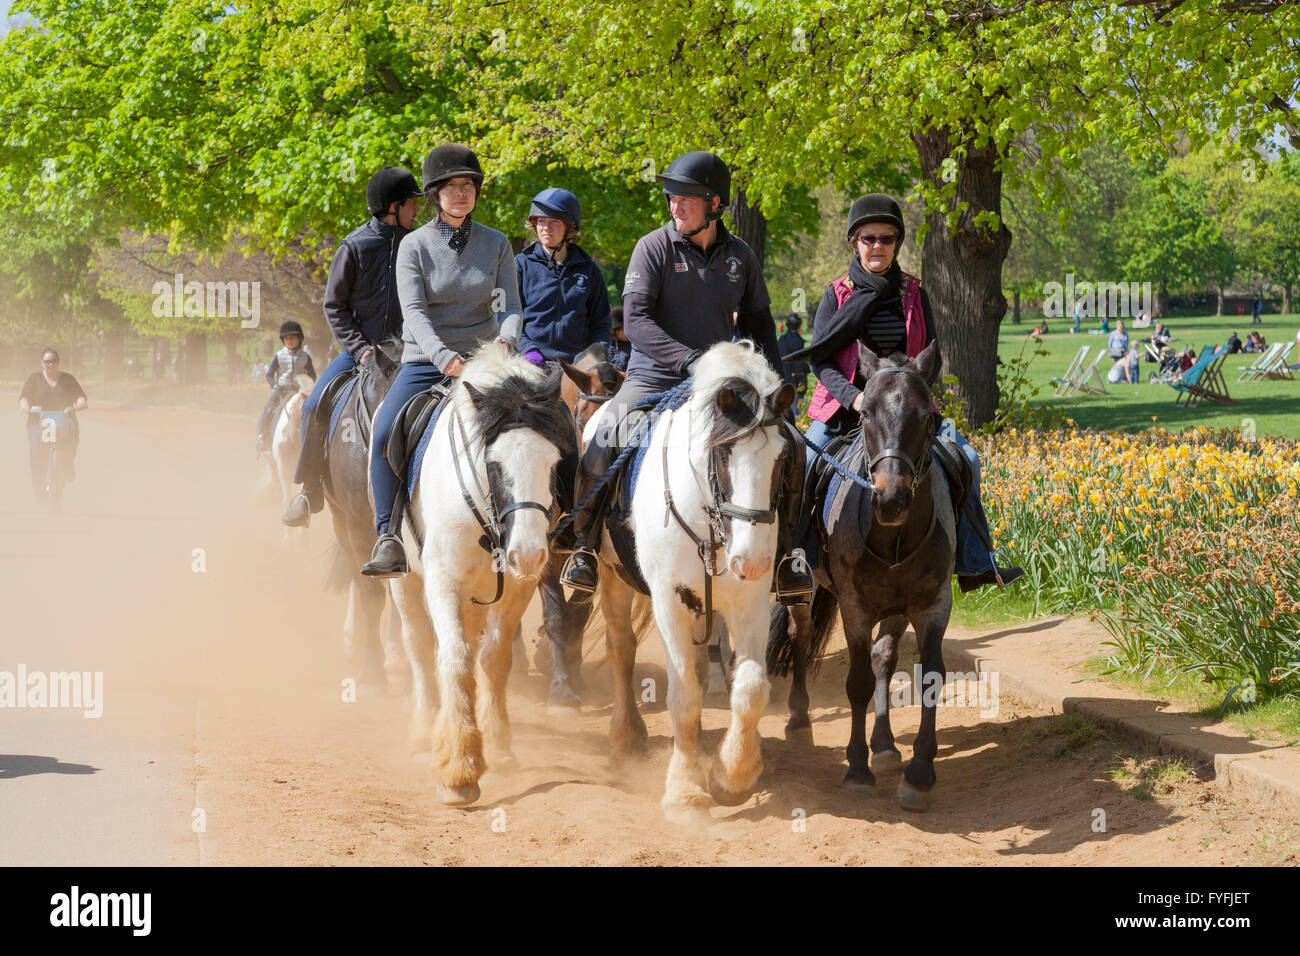 Gruppe von Pferd Reiter, Hyde Park Zaum Möglichkeiten, London, Greater London, England, Vereinigtes Königreich Stockfoto